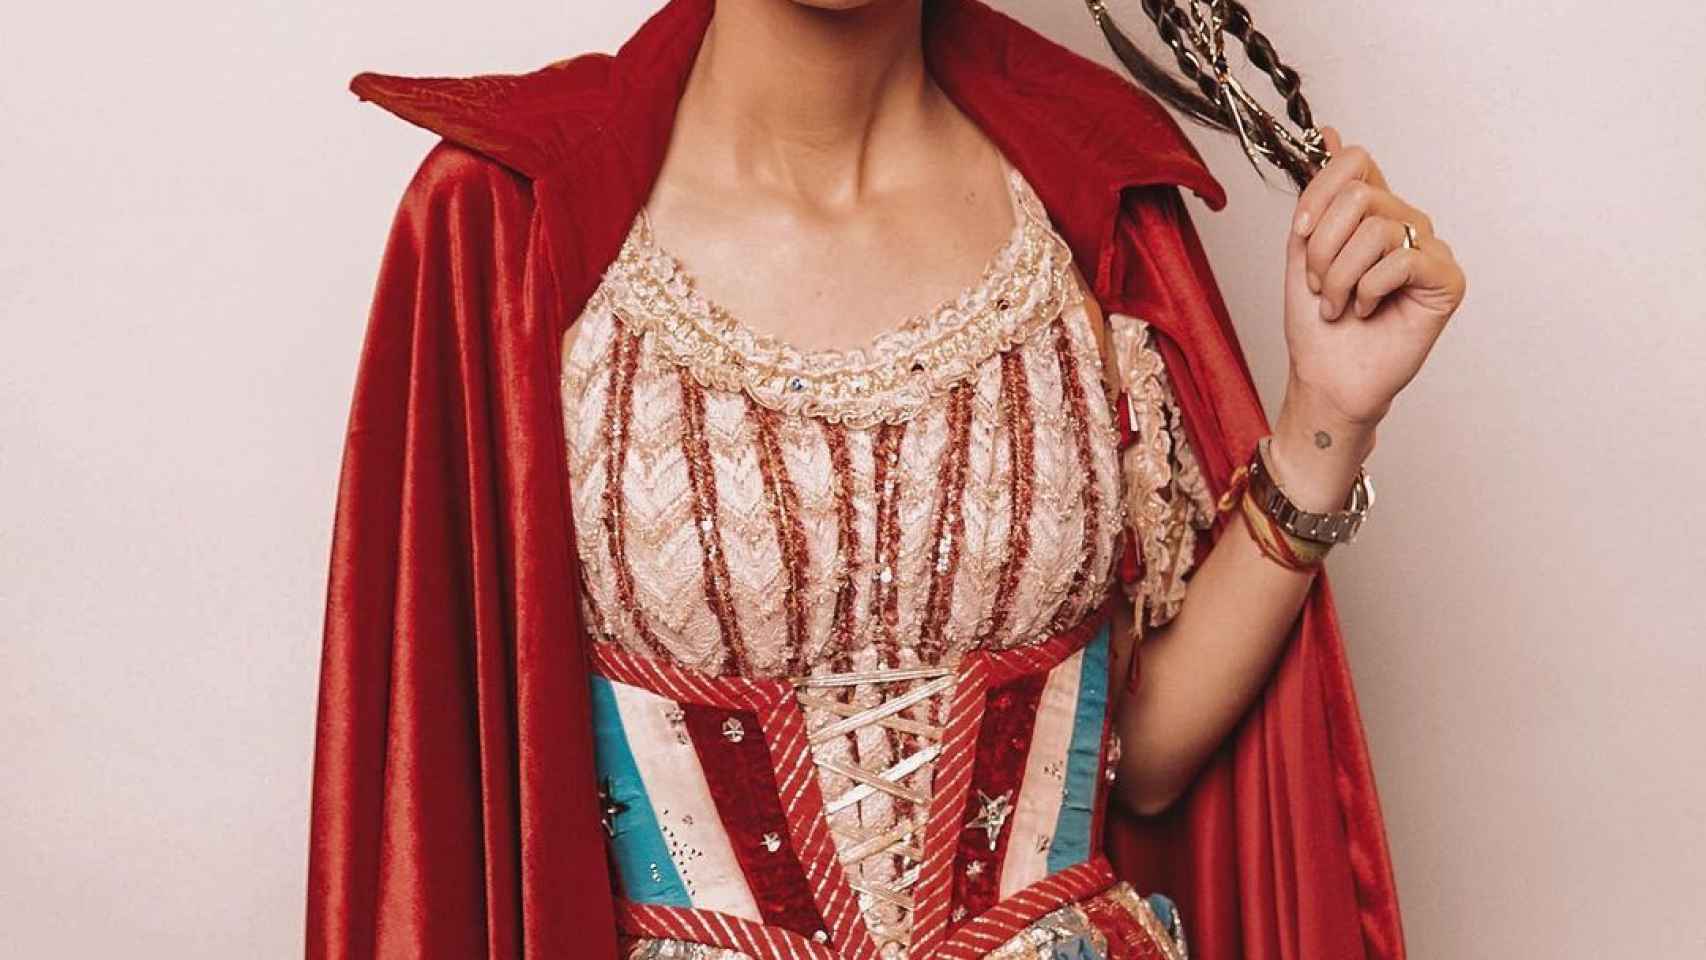 Victoria Federica de Marichalar y Borbón vestida de Wonder Woman | Foto: Redes sociales